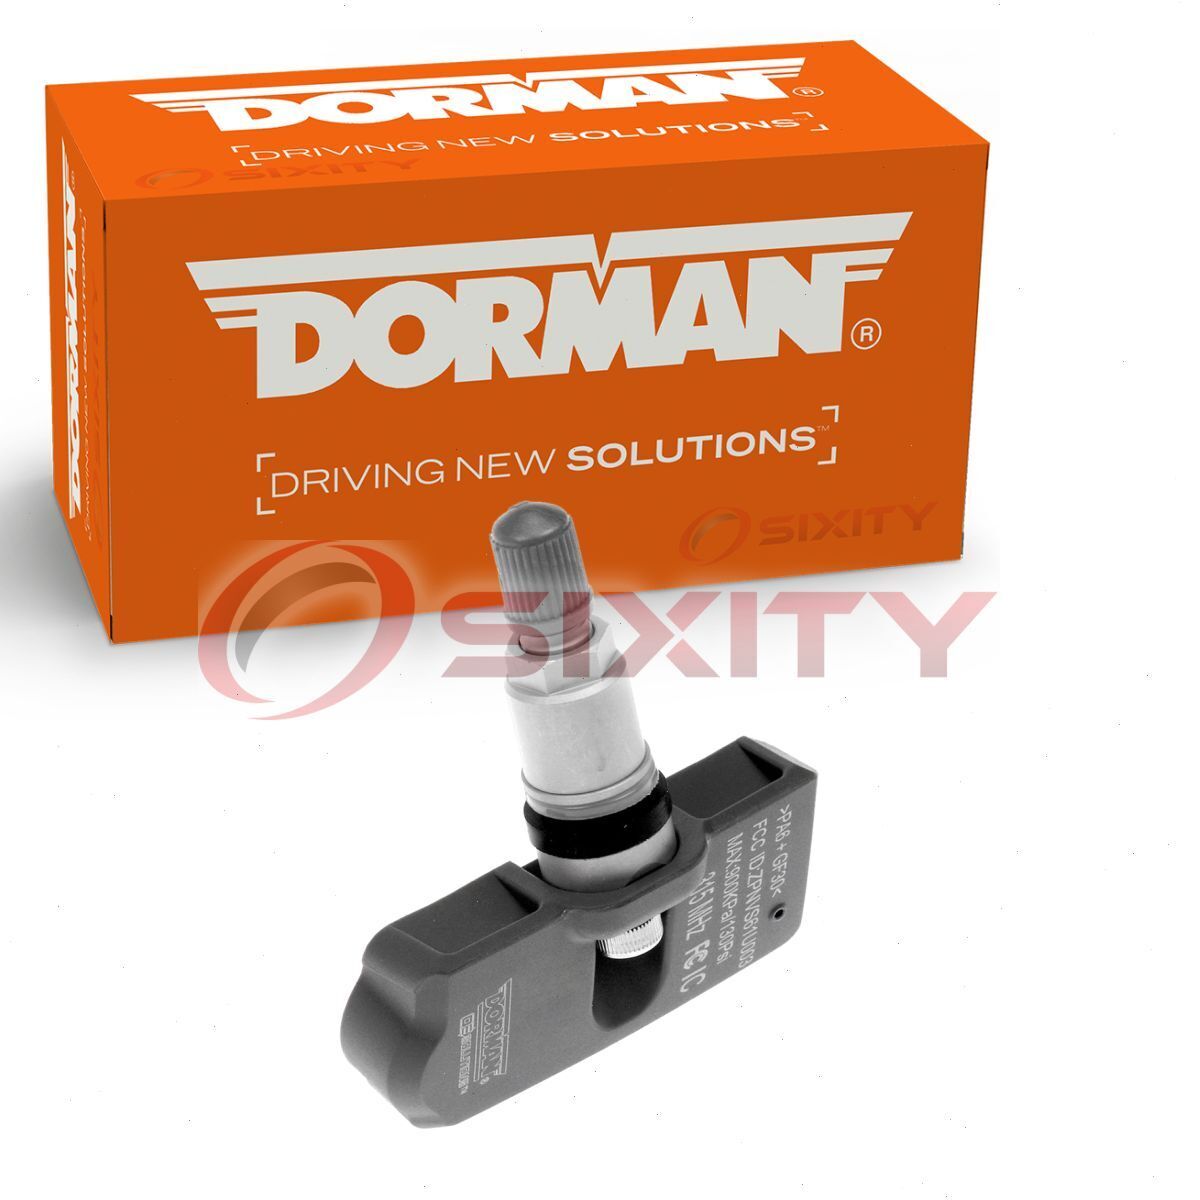 Dorman TPMS Programmable Sensor for 2000 BMW 323Ci Tire Pressure Monitoring io